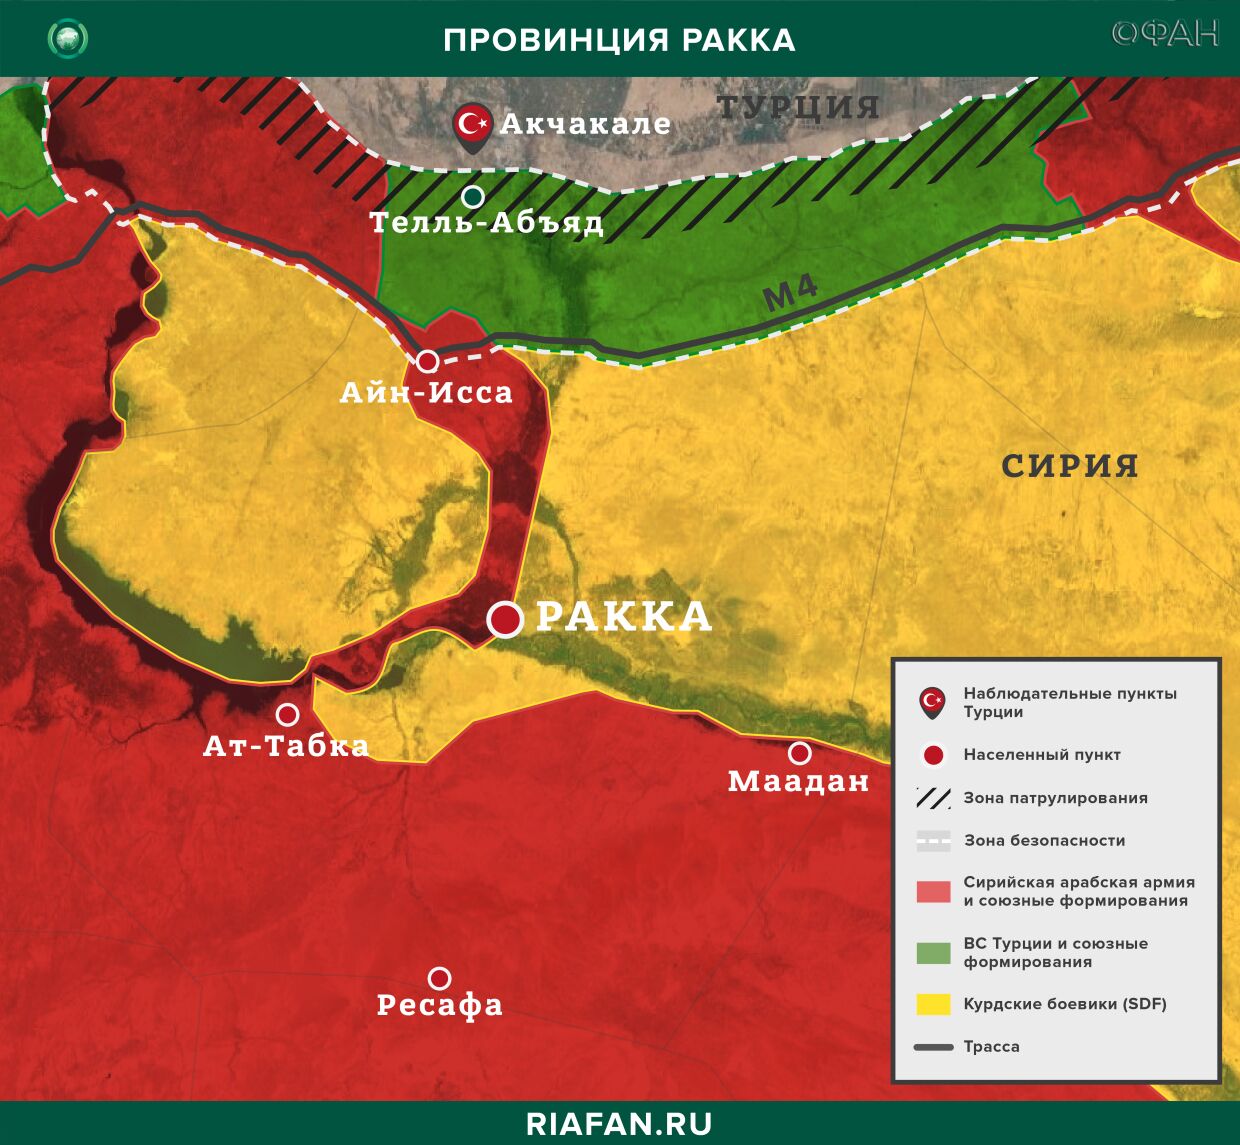 Сирия новости 9 сентября 22.30: ЦПВС РФ сообщил о проведении трех гуманитарных акций в САР